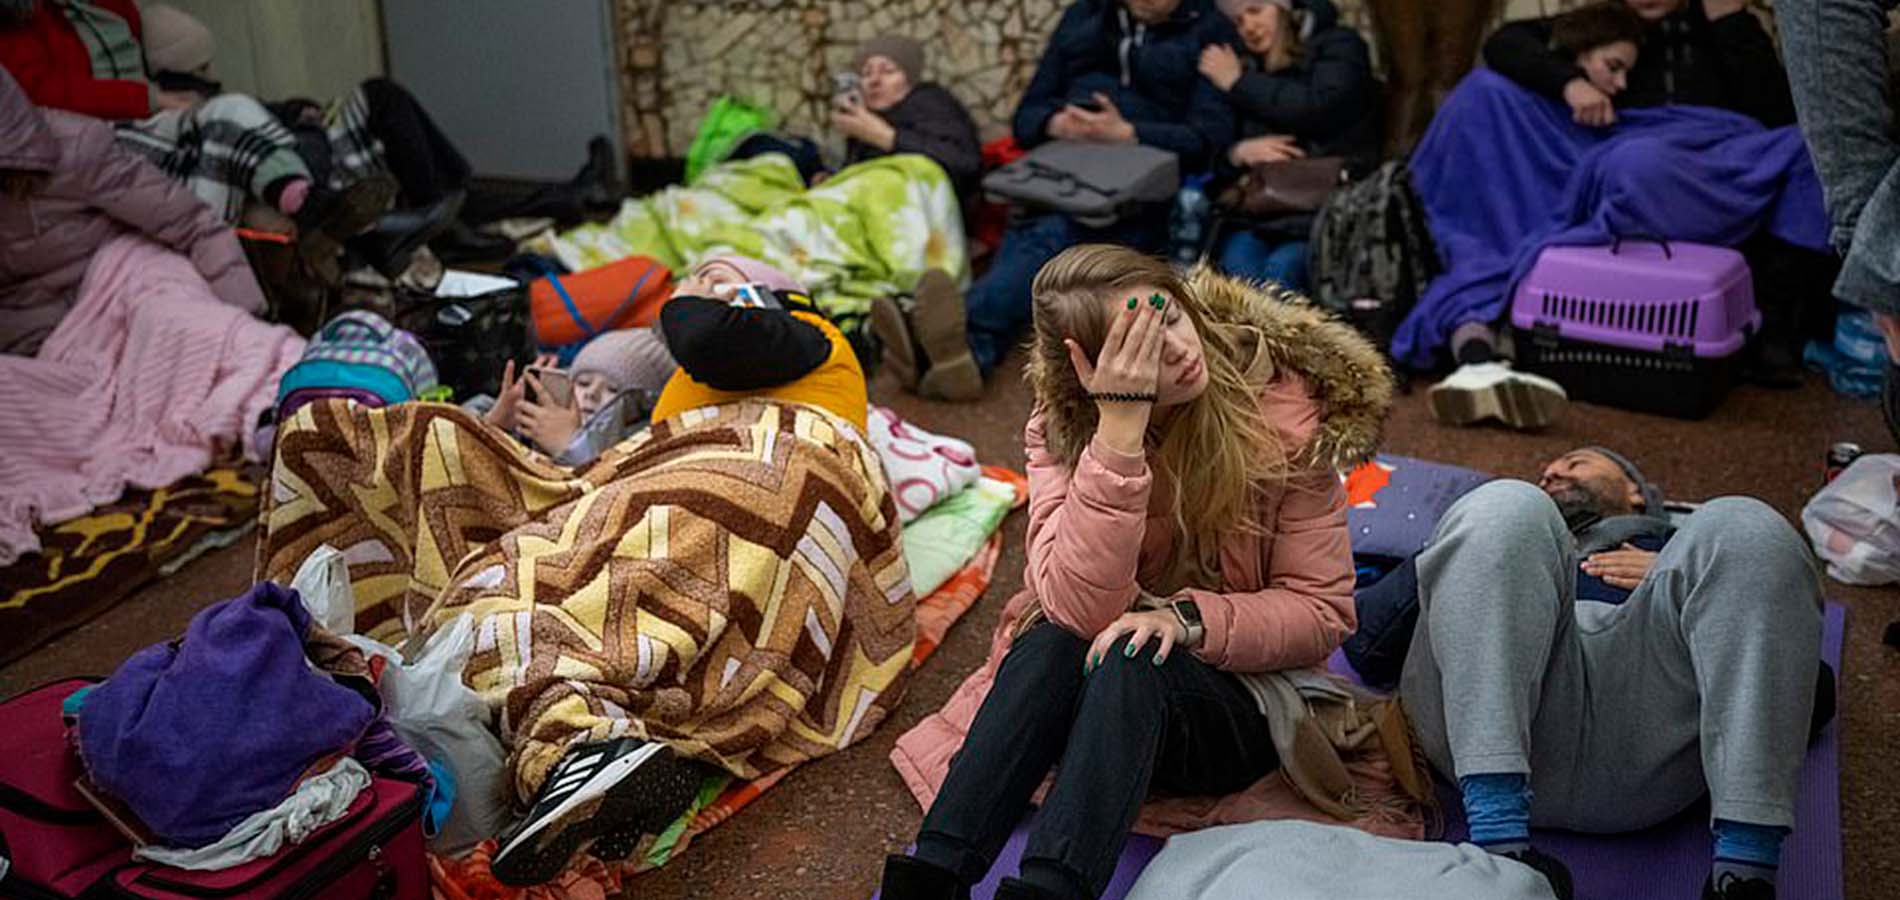 Emergency help for <br/>Ukrainian refugees 